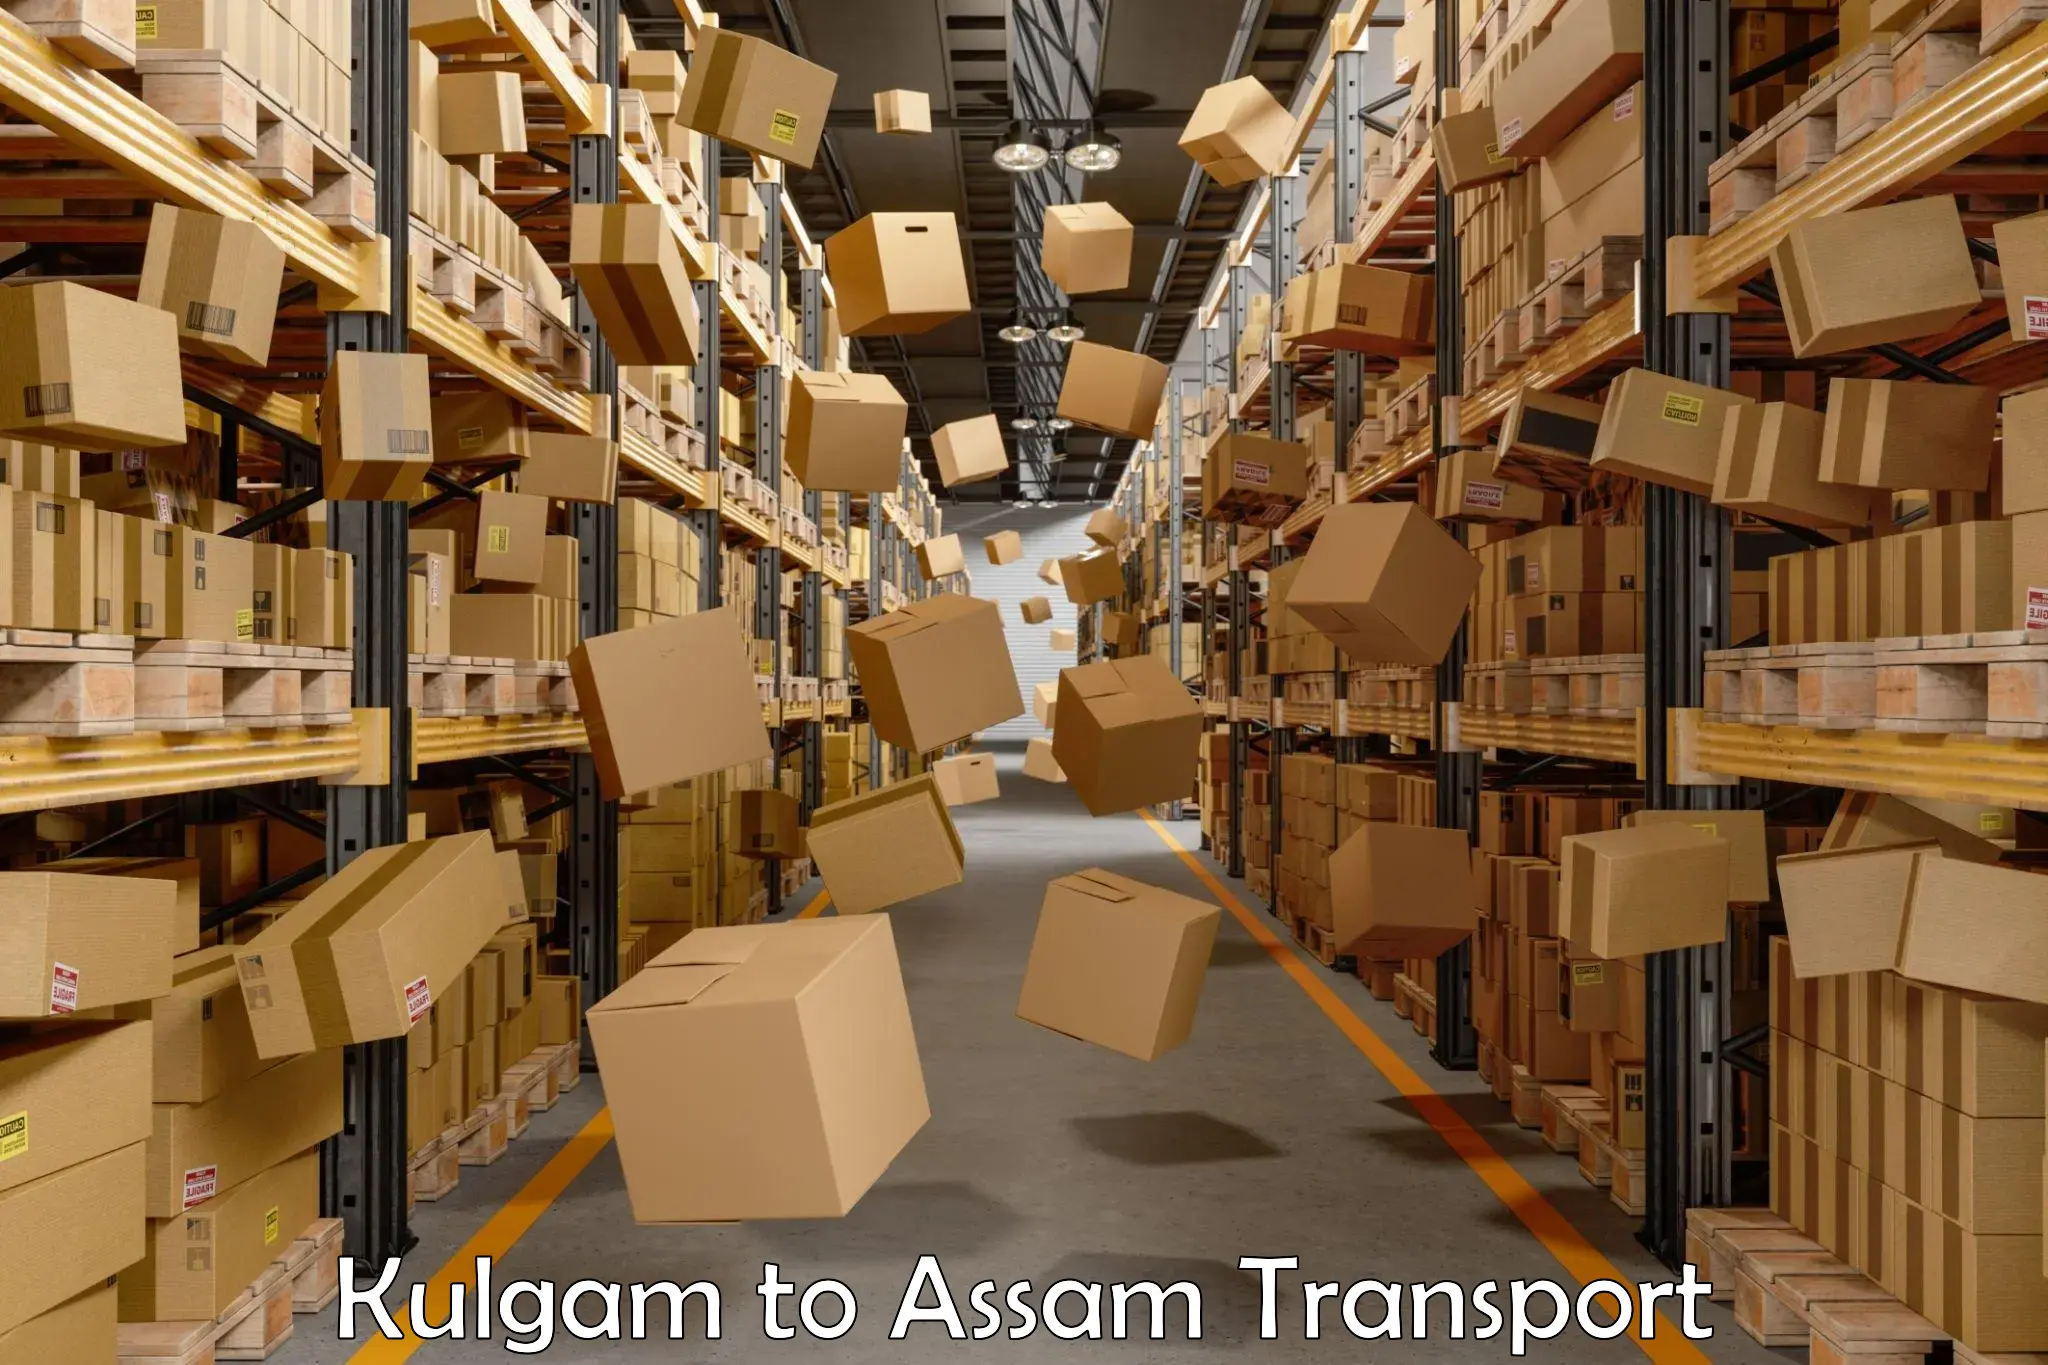 Cargo train transport services Kulgam to Nagaon